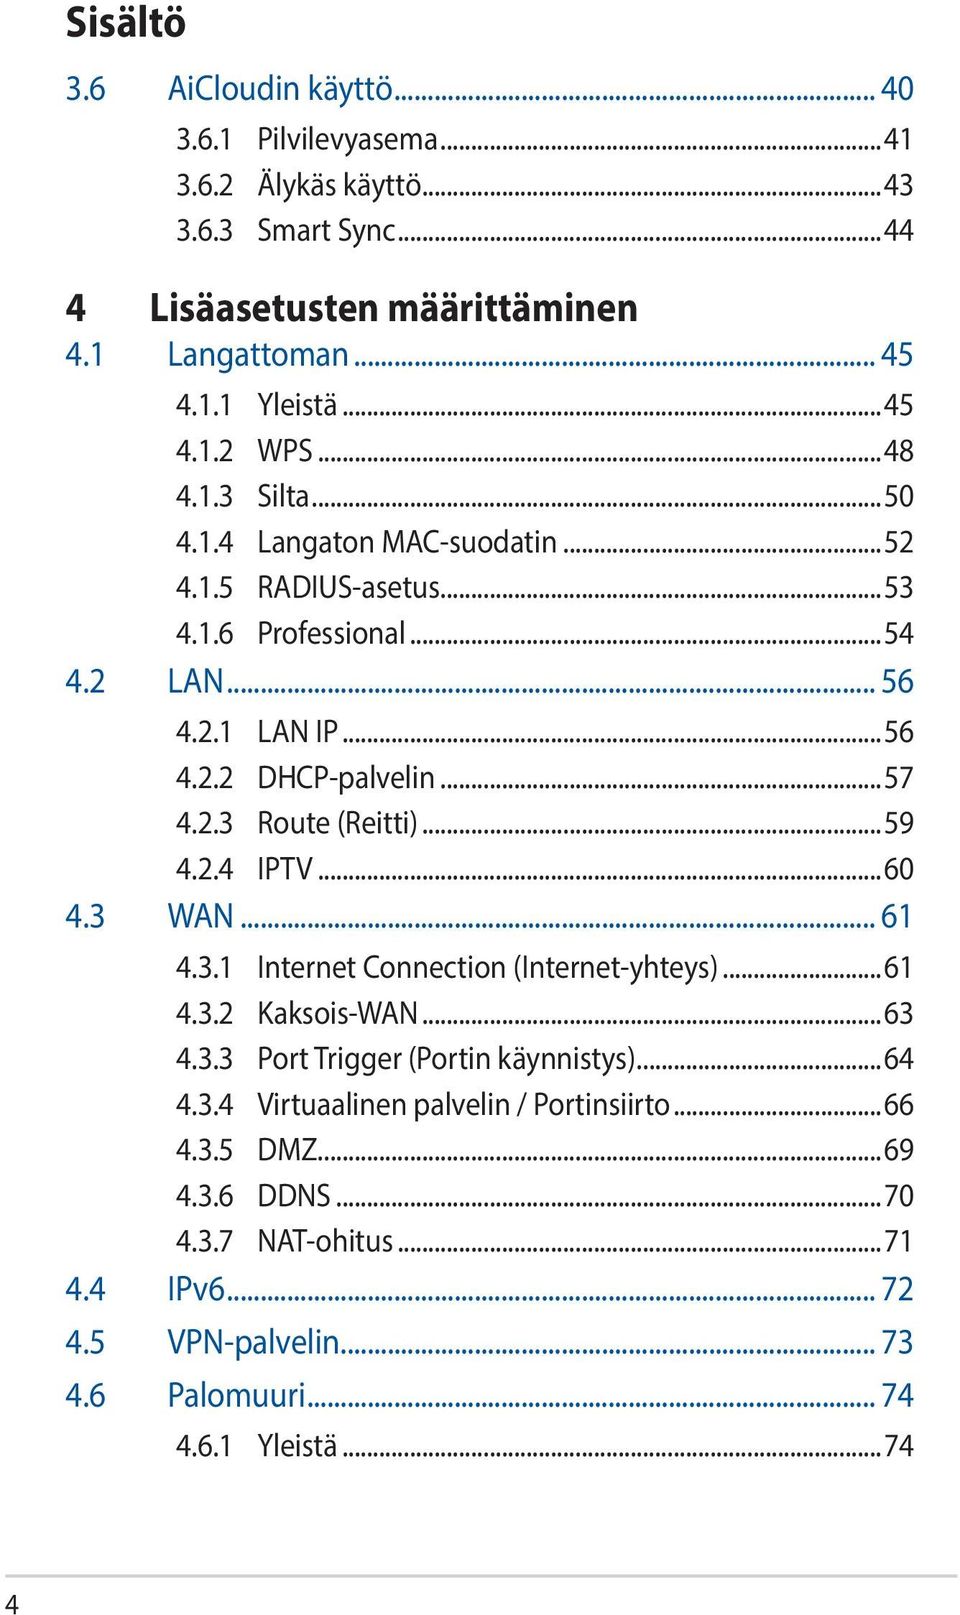 2.3 Route (Reitti)...59 4.2.4 IPTV...60 4.3 WAN... 61 4.3.1 Internet Connection (Internet-yhteys)...61 4.3.2 Kaksois-WAN...63 4.3.3 Port Trigger (Portin käynnistys)...64 4.3.4 Virtuaalinen palvelin / Portinsiirto.